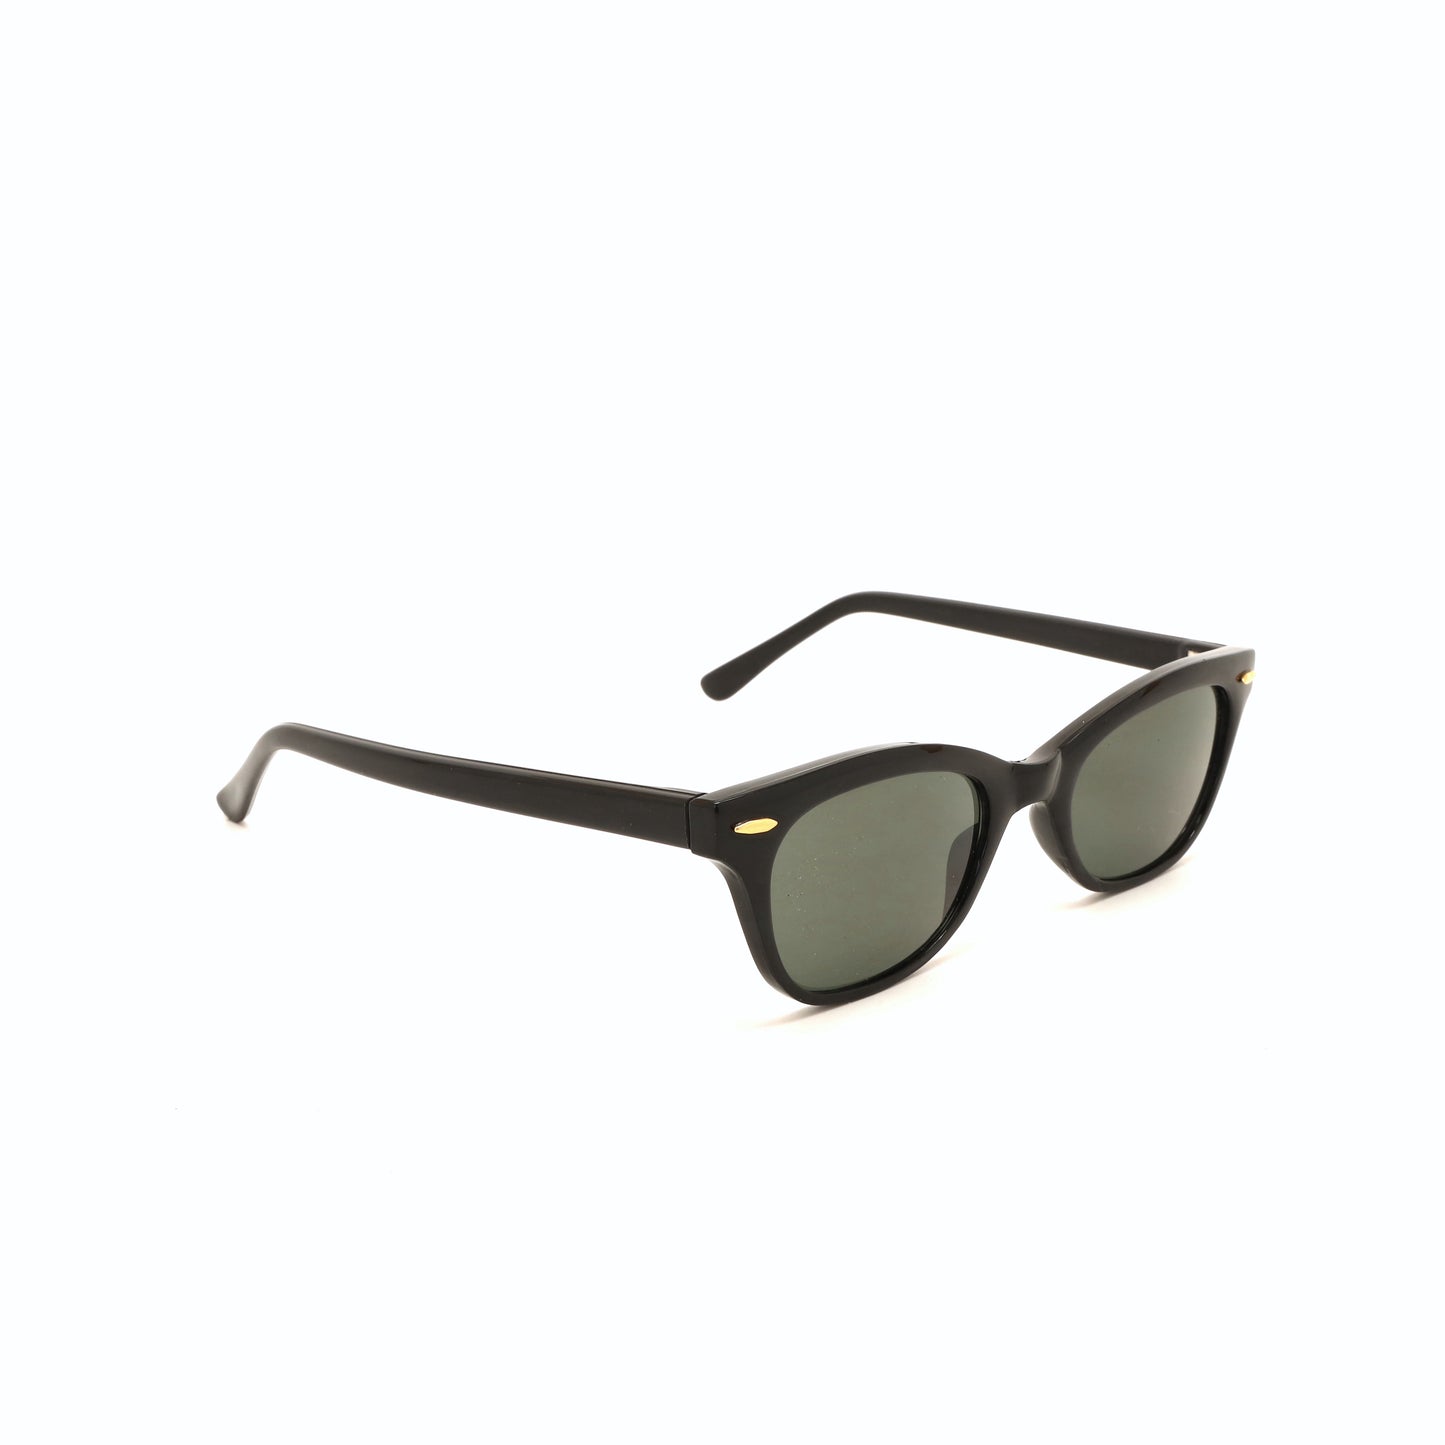 Vintage 90s Hornrimmed Style Wayfarer Sunglasses - Black